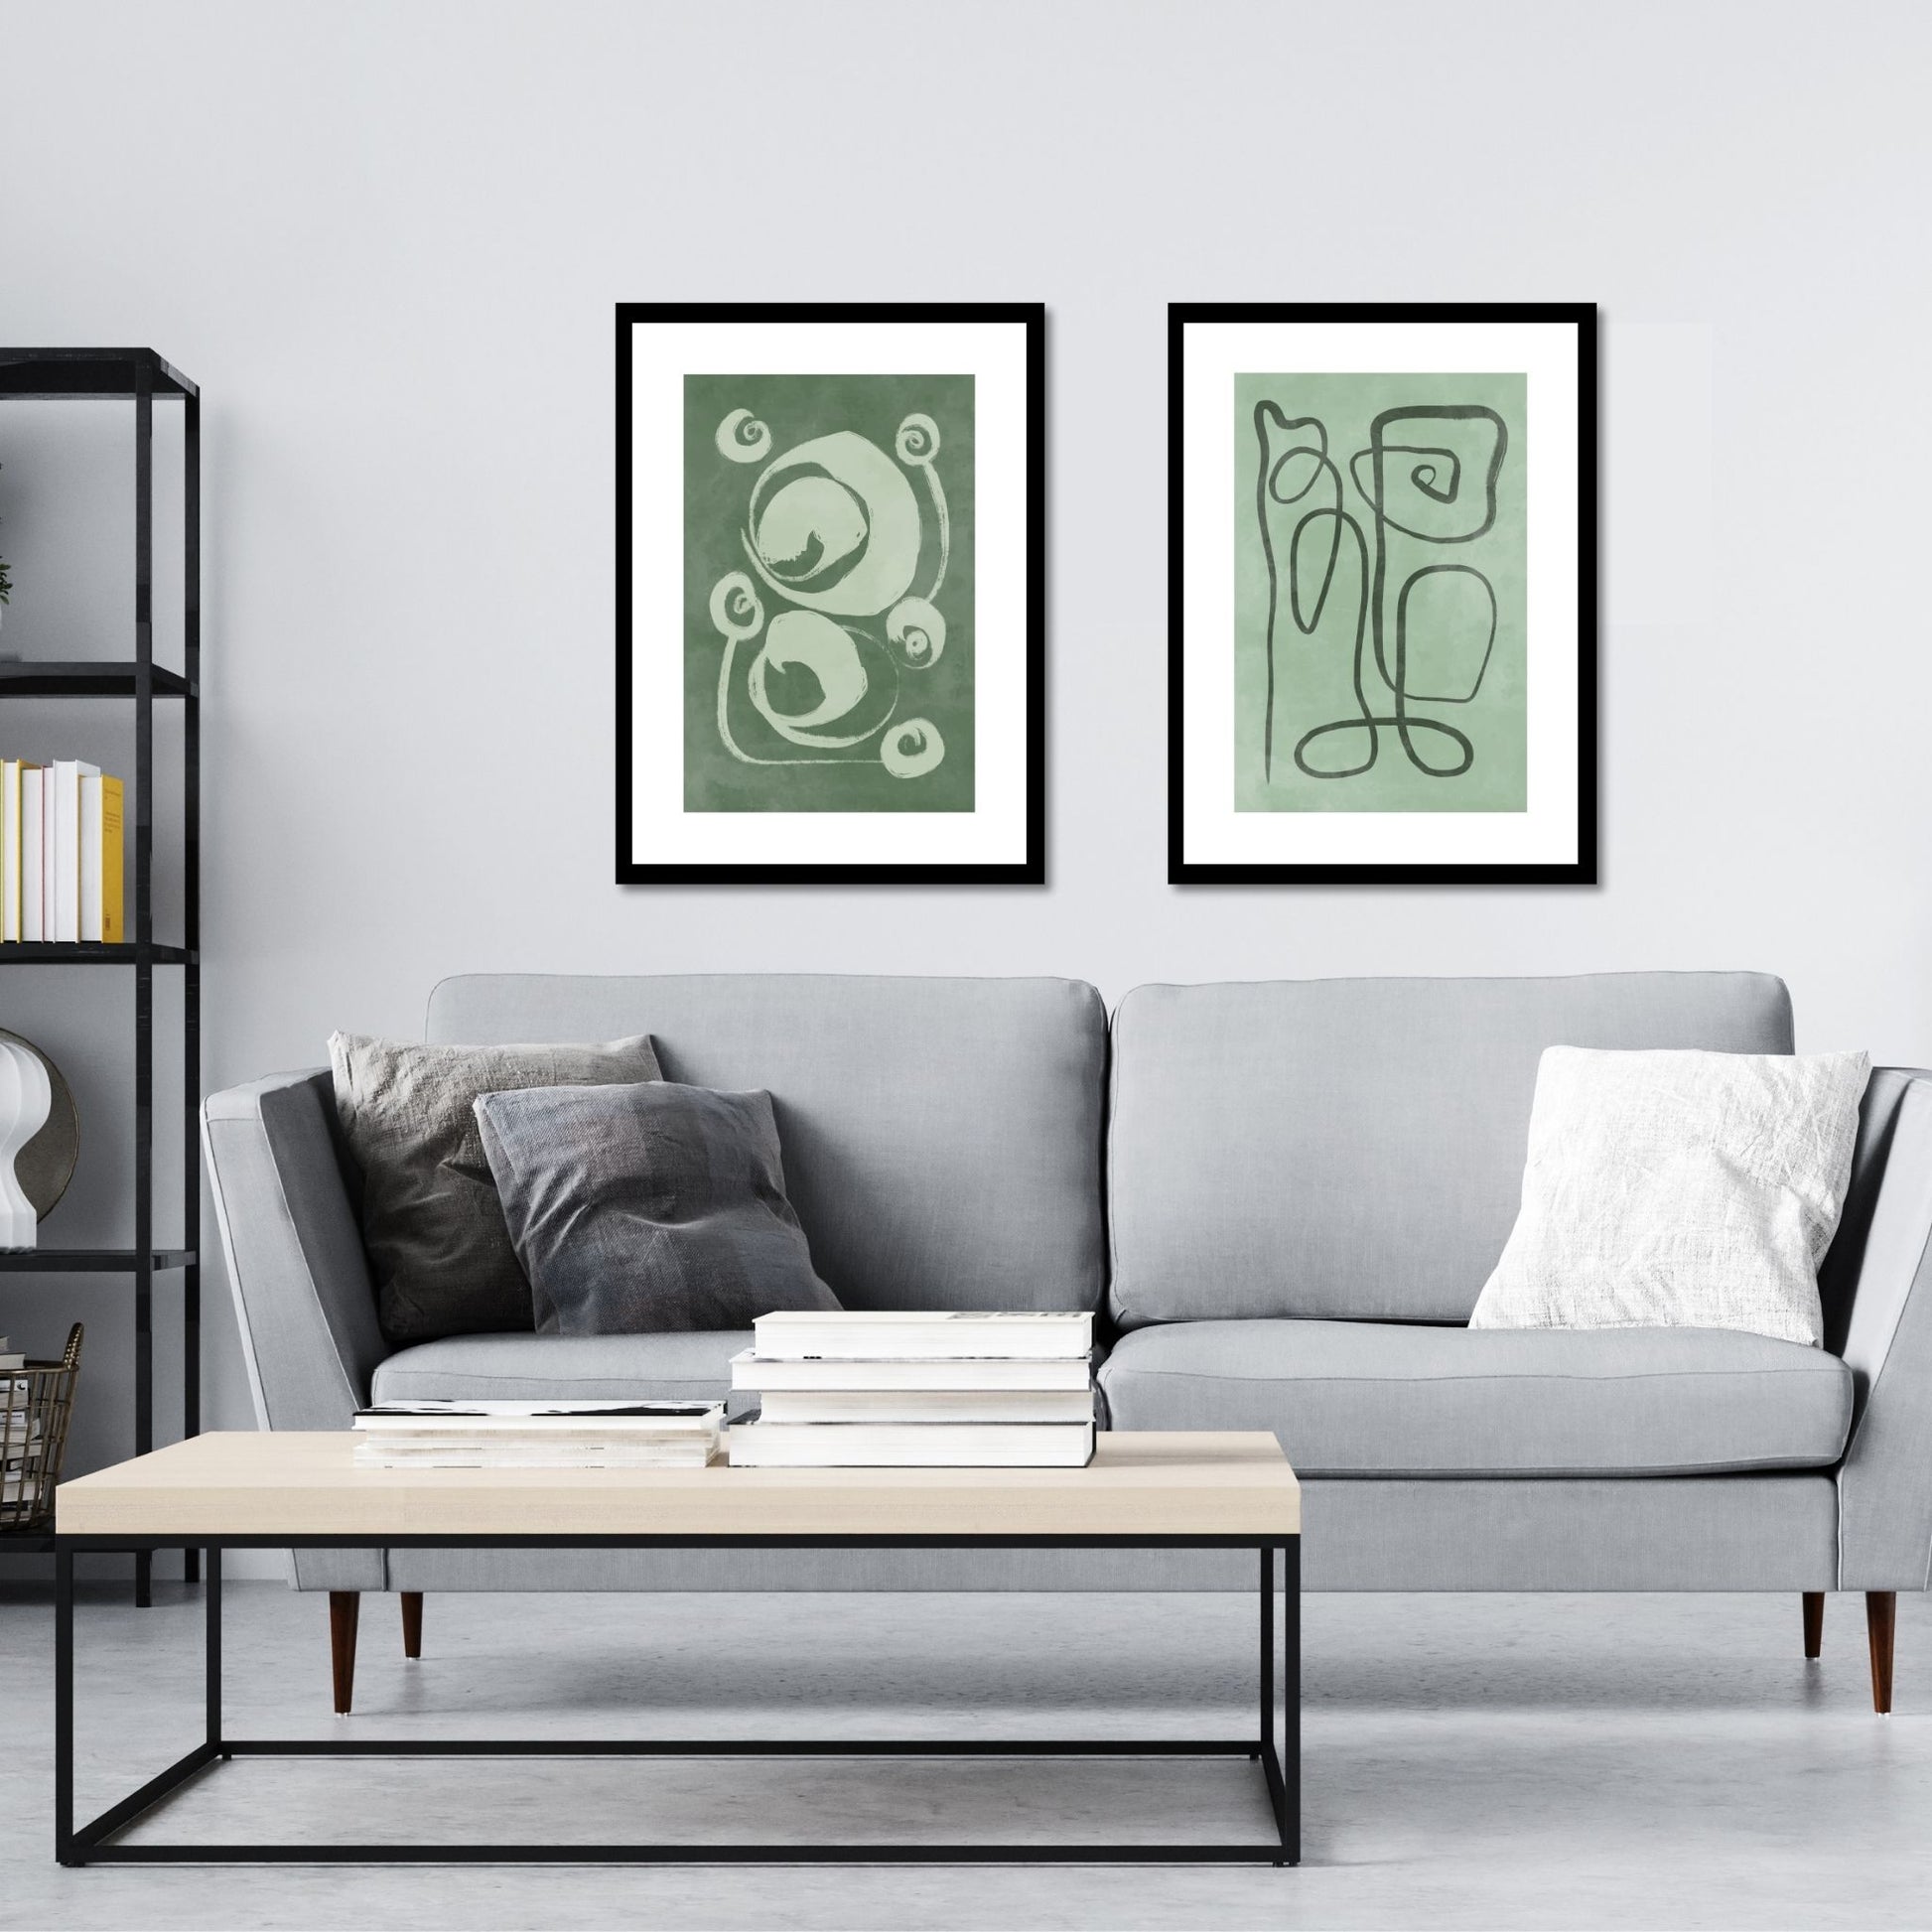 Green Abstract plakat. Med sine beroligende grønne toner og sofistikerte design, tilfører denne plakaten en følelse av ro og harmoni til ethvert rom. Illustrasjonen viser plakat No7 og No8 i sort ramme på en vegg over en sofa.